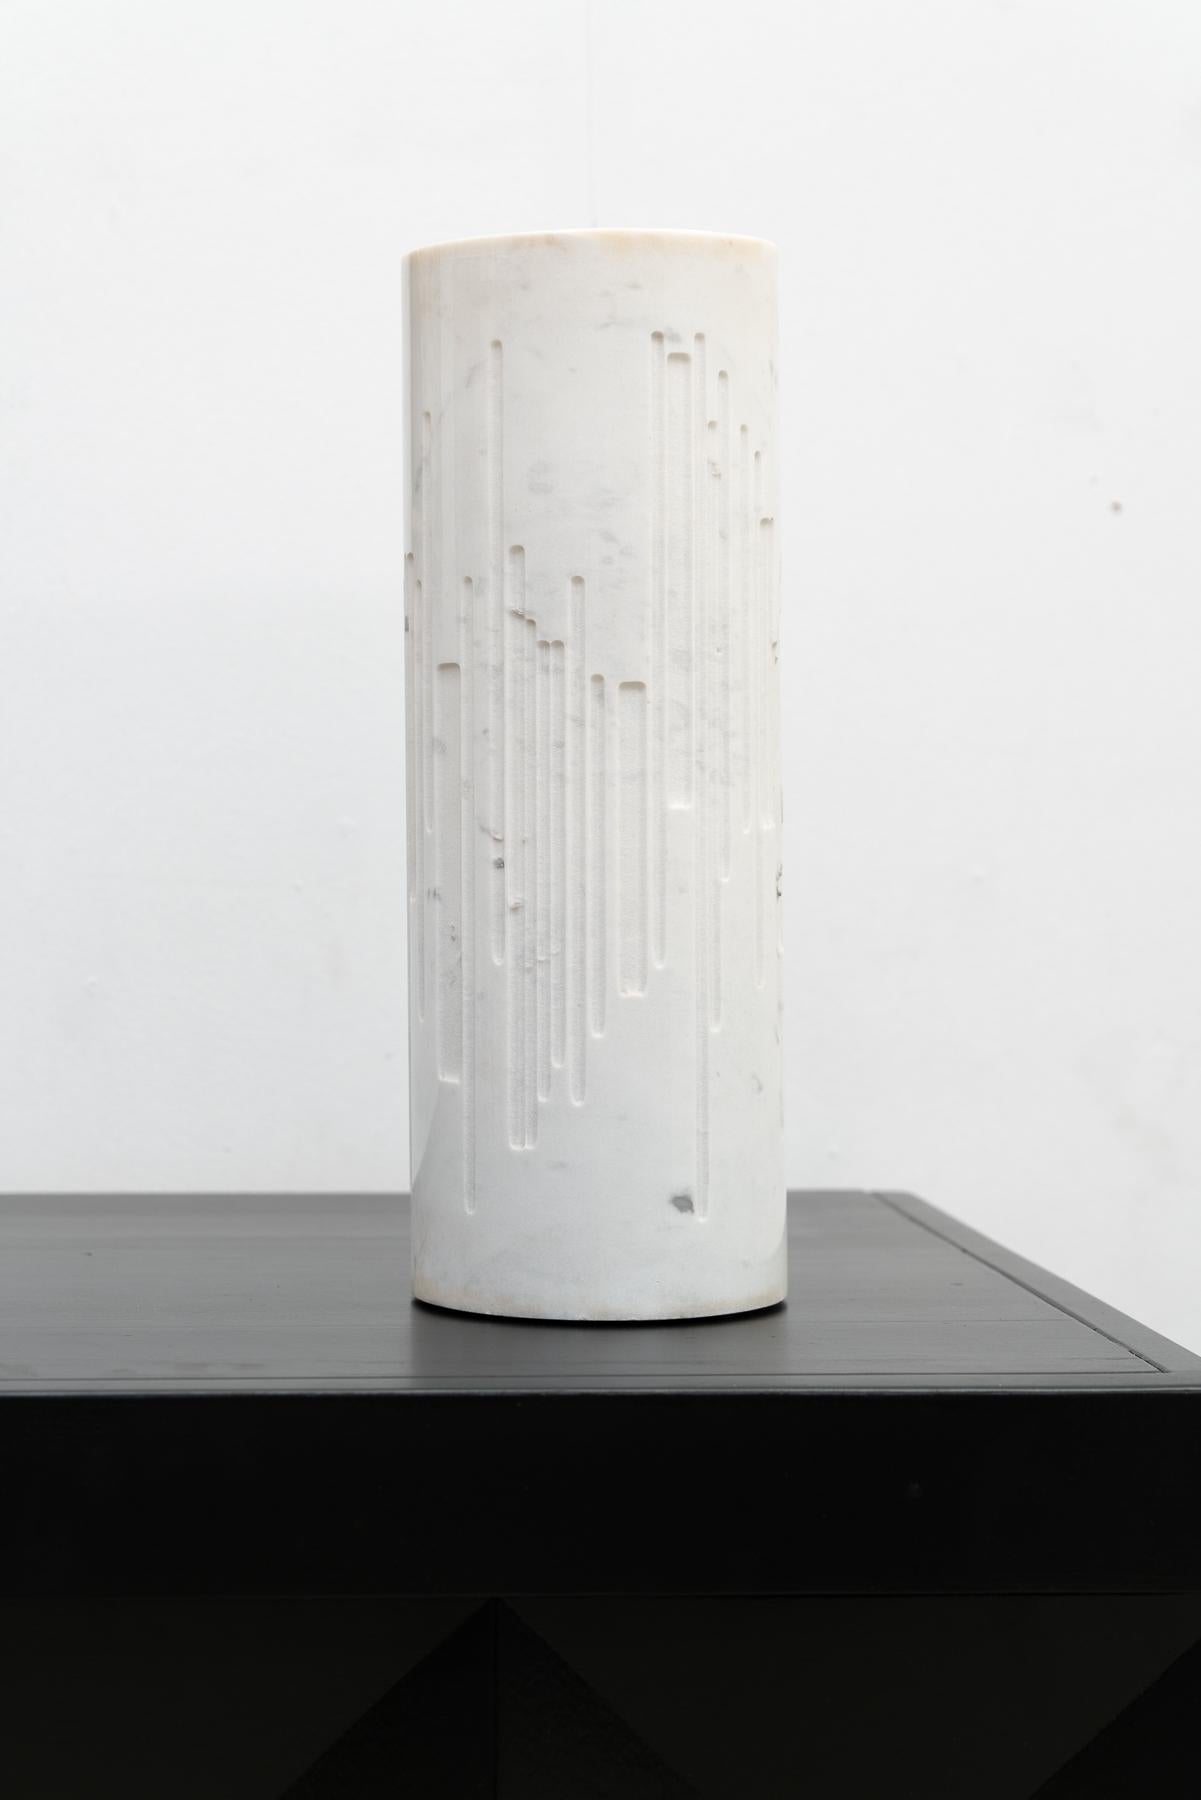 Lampe de table cylindrique en marbre du Grupo NP2, fabriquée en Italie. Cette lampe présente un design tubulaire évidé et gravé en marbre de Calacatta, permettant à la lumière de transparaître gracieusement.

N'hésitez pas à nous contacter pour